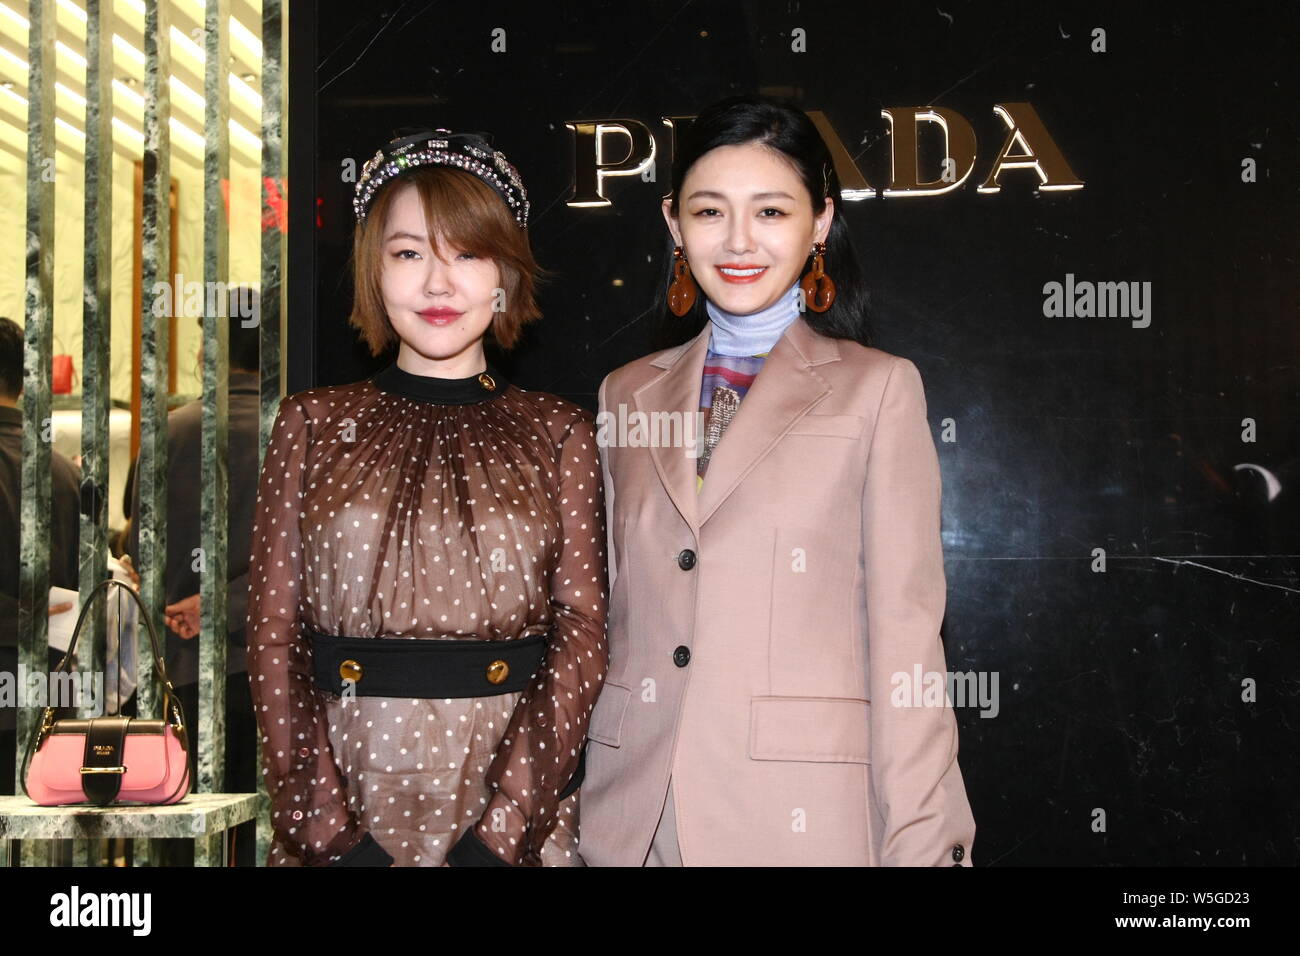 La cantante y actriz taiwanesa Barbie Hsu, también conocido por su apodo  "Big S', a la derecha, y su anfitrión y hermana de la actriz Dee Hsu, más  comúnmente conocida como Xi